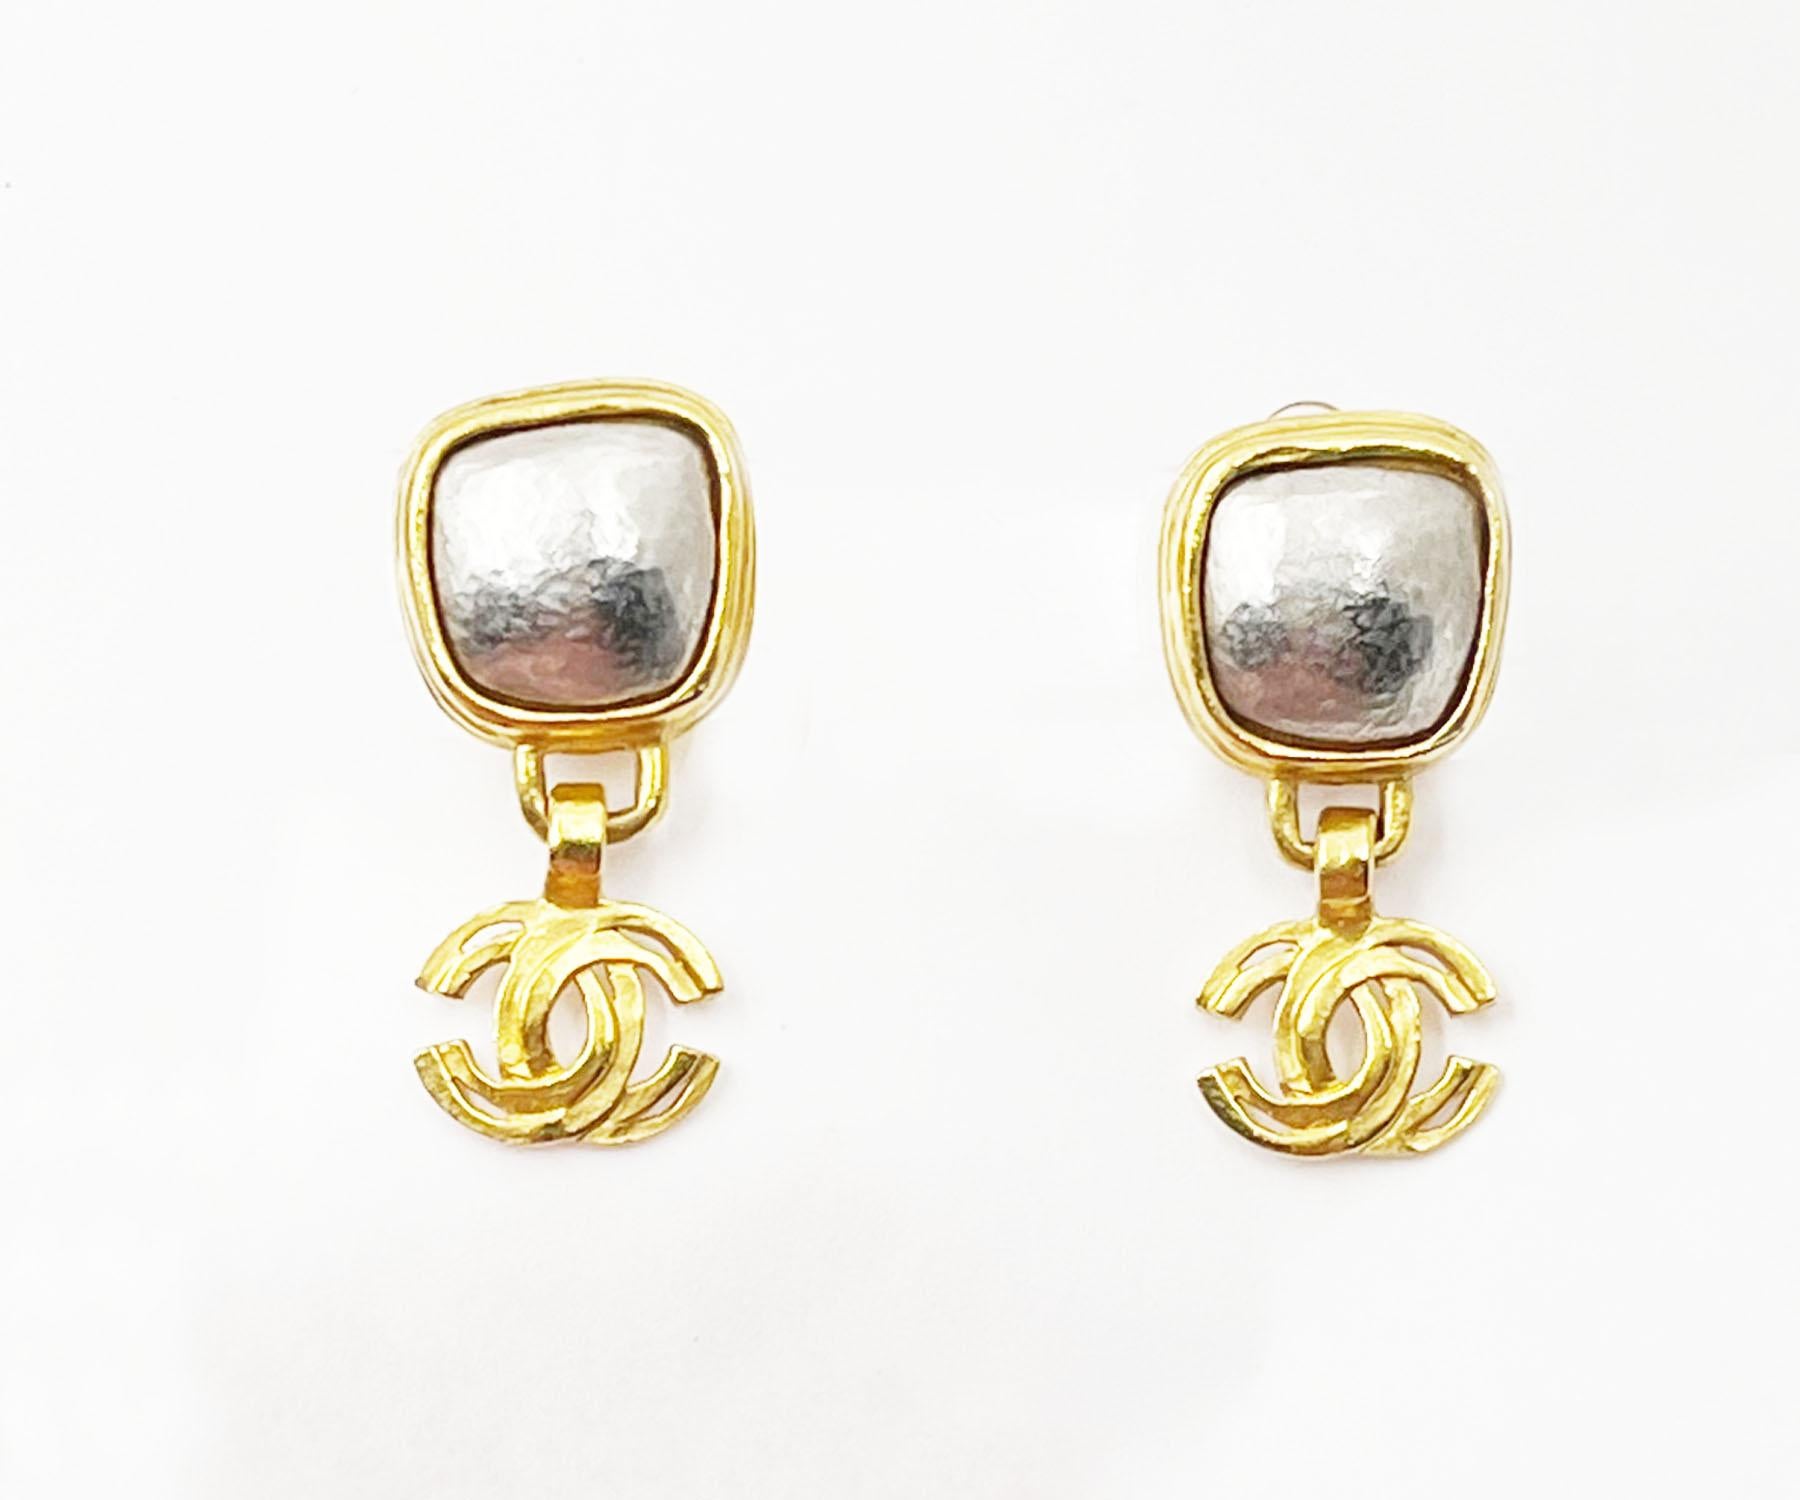 Chanel Vintage vergoldete quadratische Silberstein CC Clip-Ohrringe, Vintage

*Markierung 97
*Hergestellt in Frankreich
*Kommt mit dem Originalkarton

-Es ist ungefähr 1,5